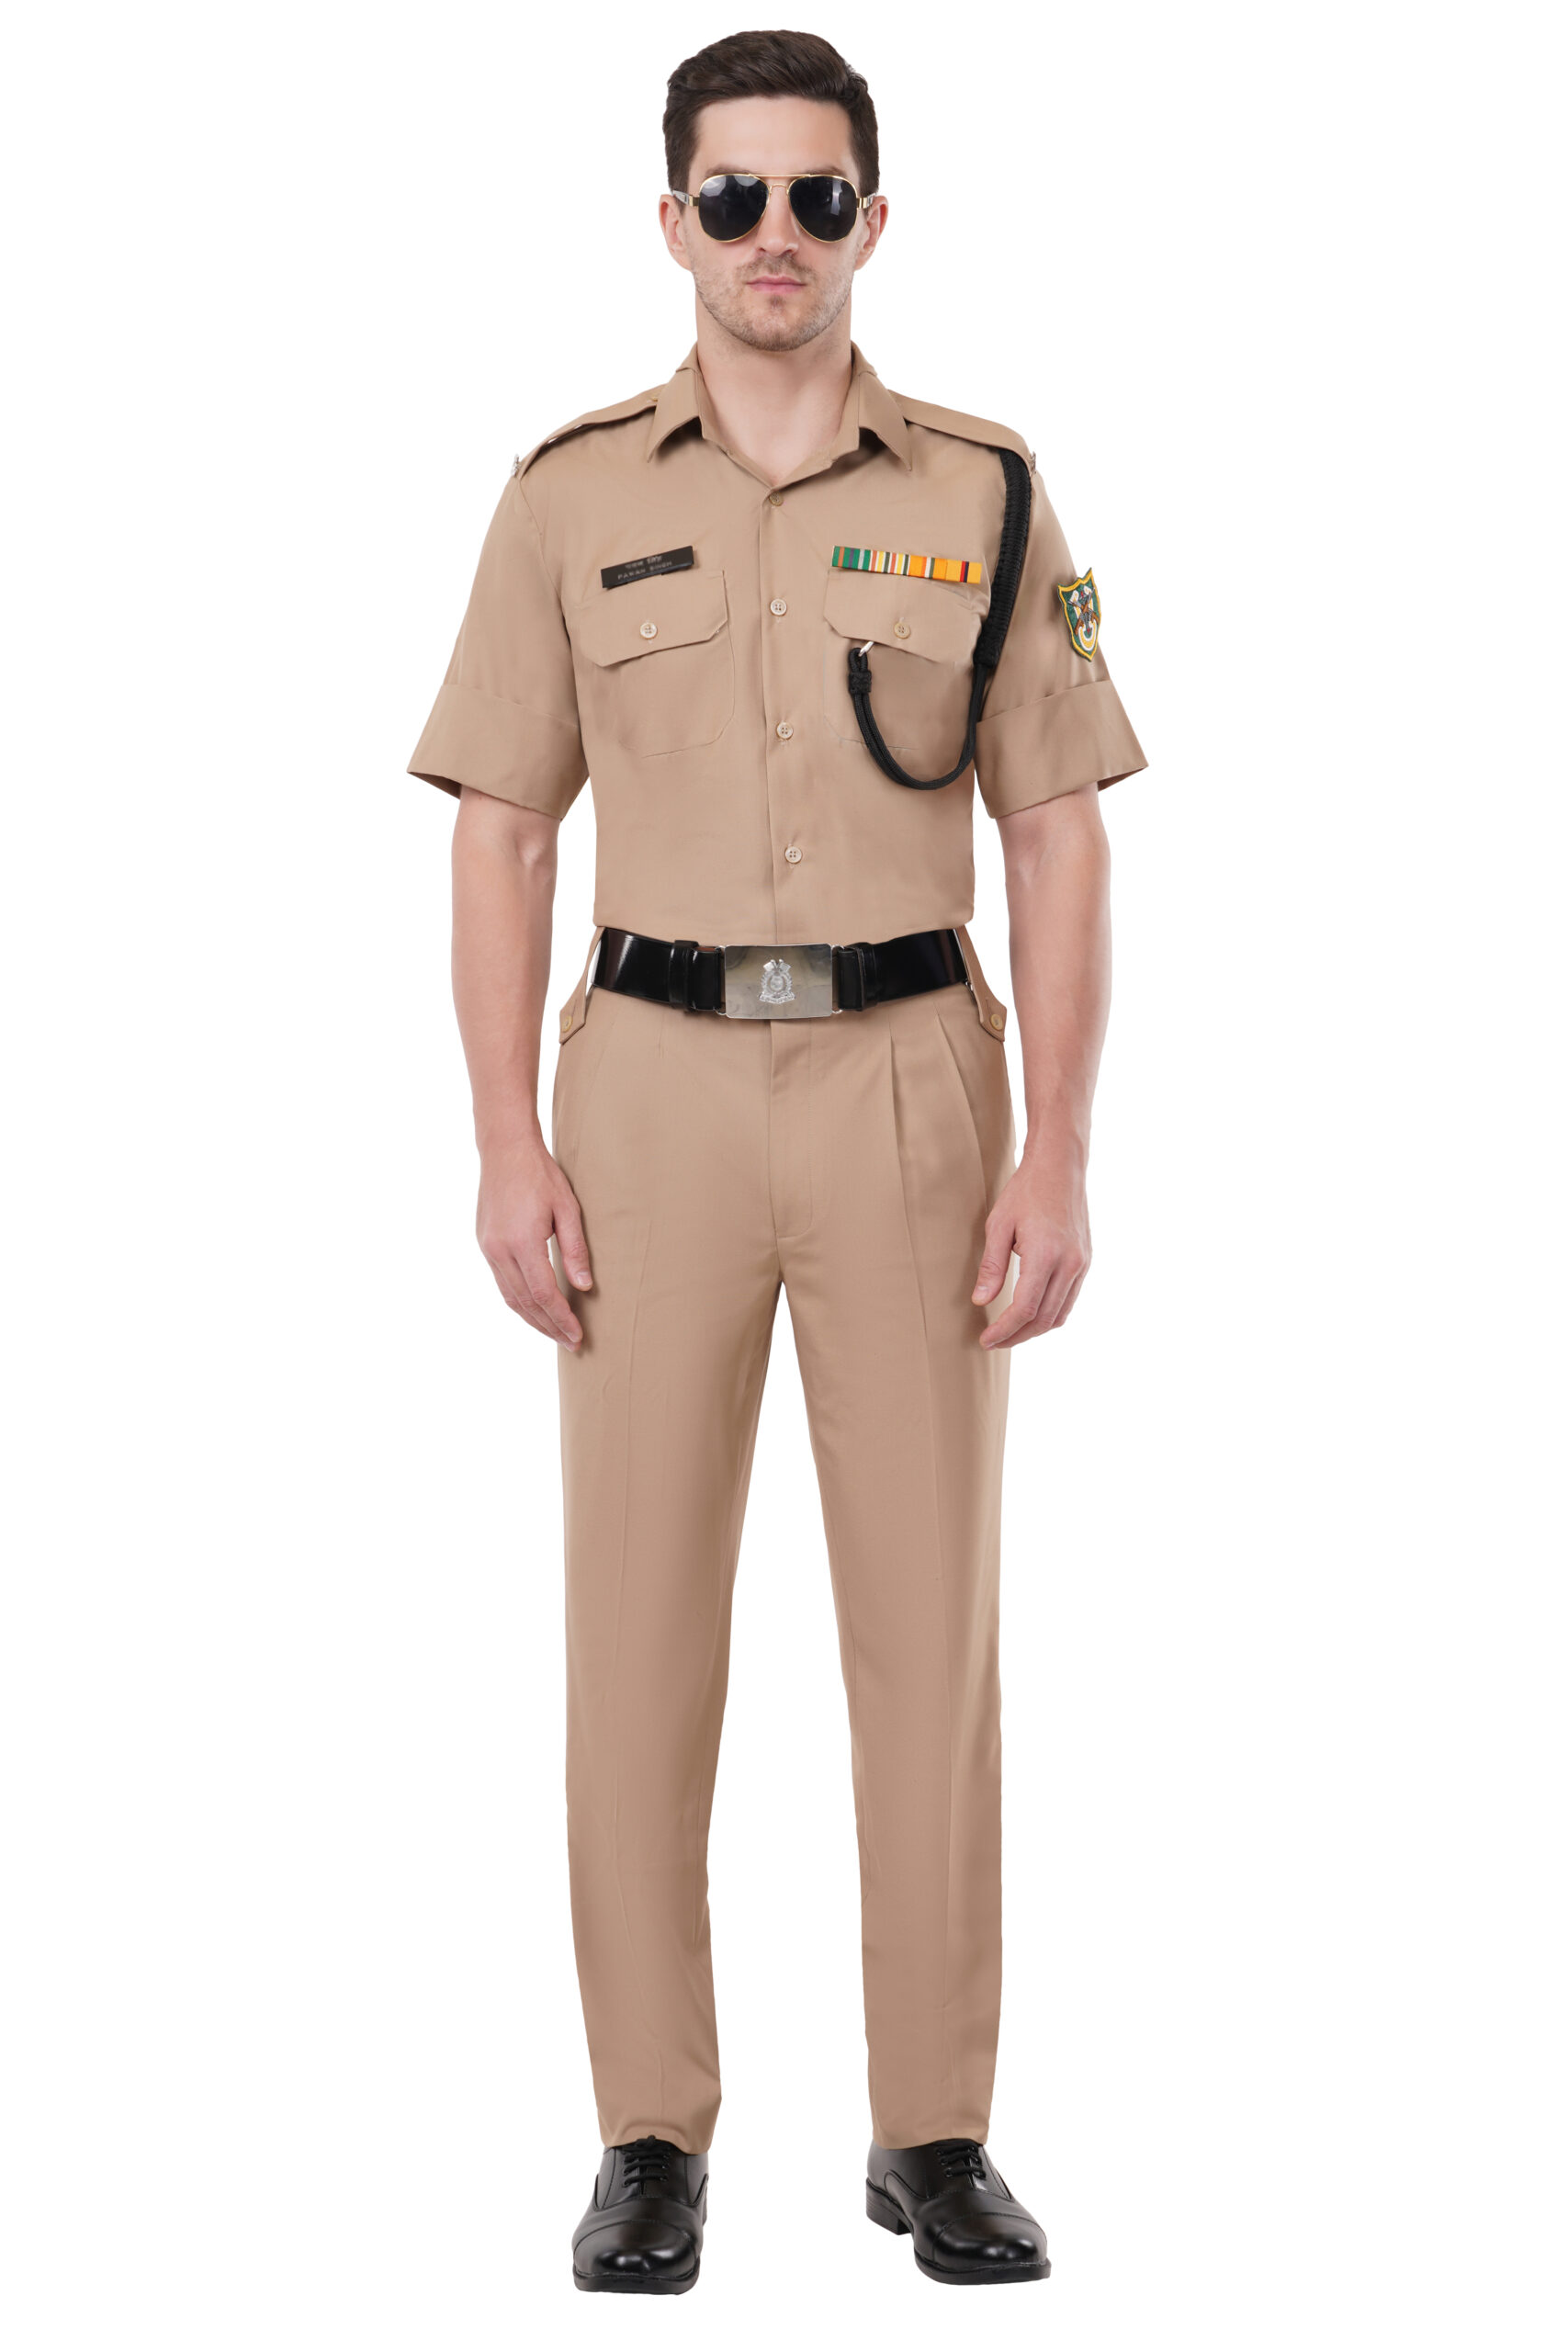 BSF Khaki Uniform